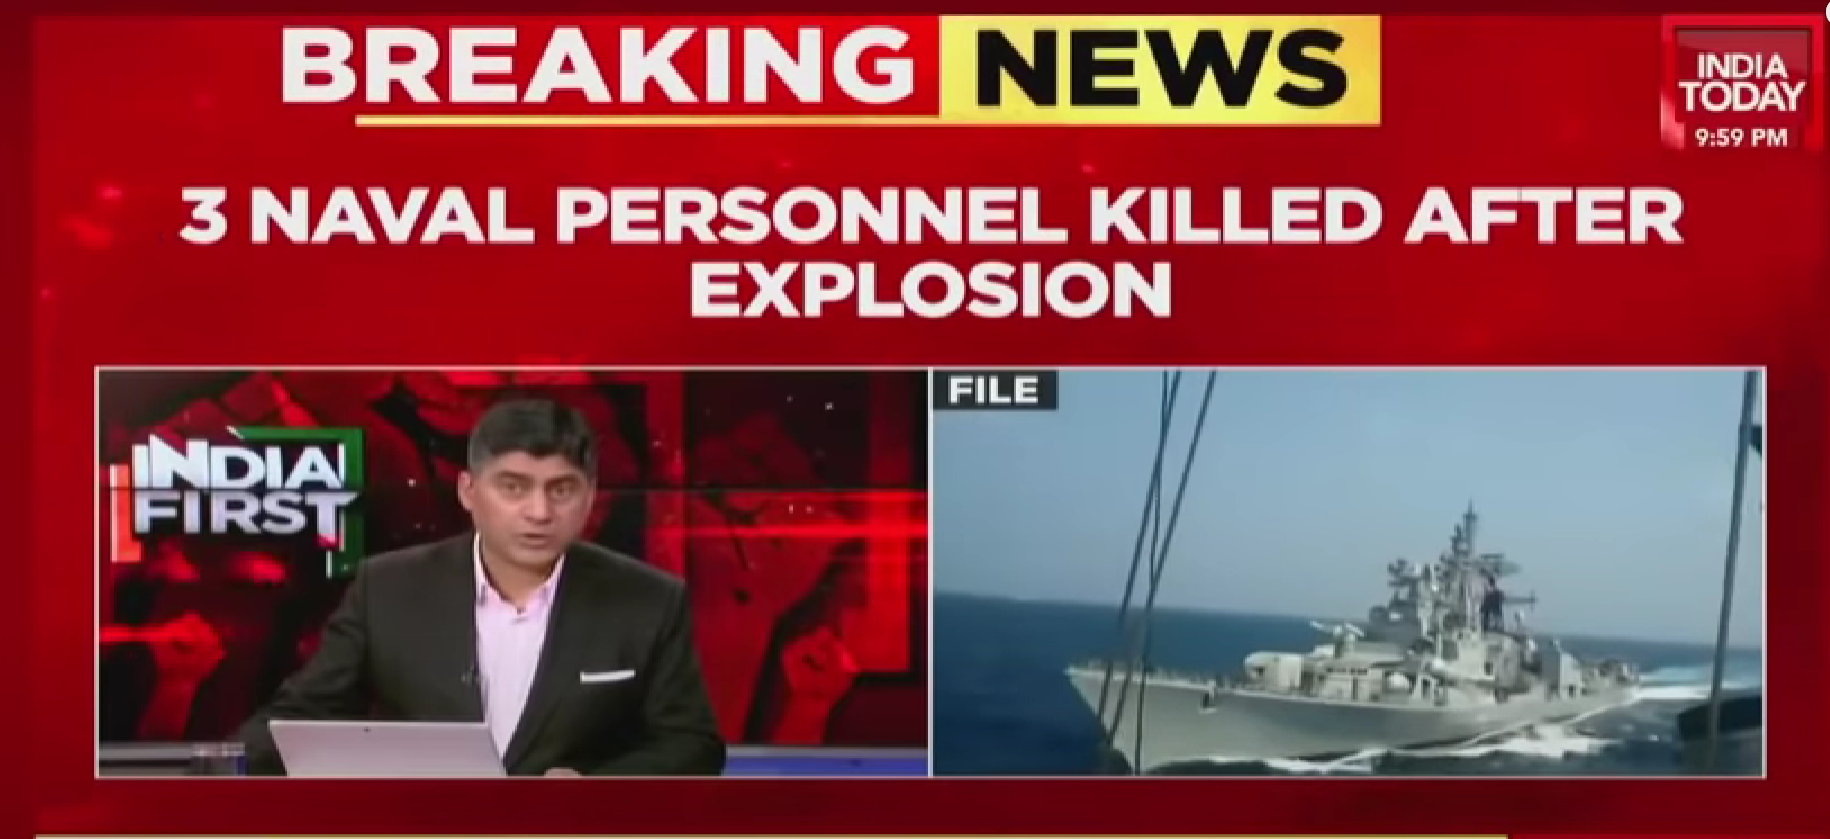 印度一驱逐舰爆炸致3死11伤 去年与美国军演后曾起火